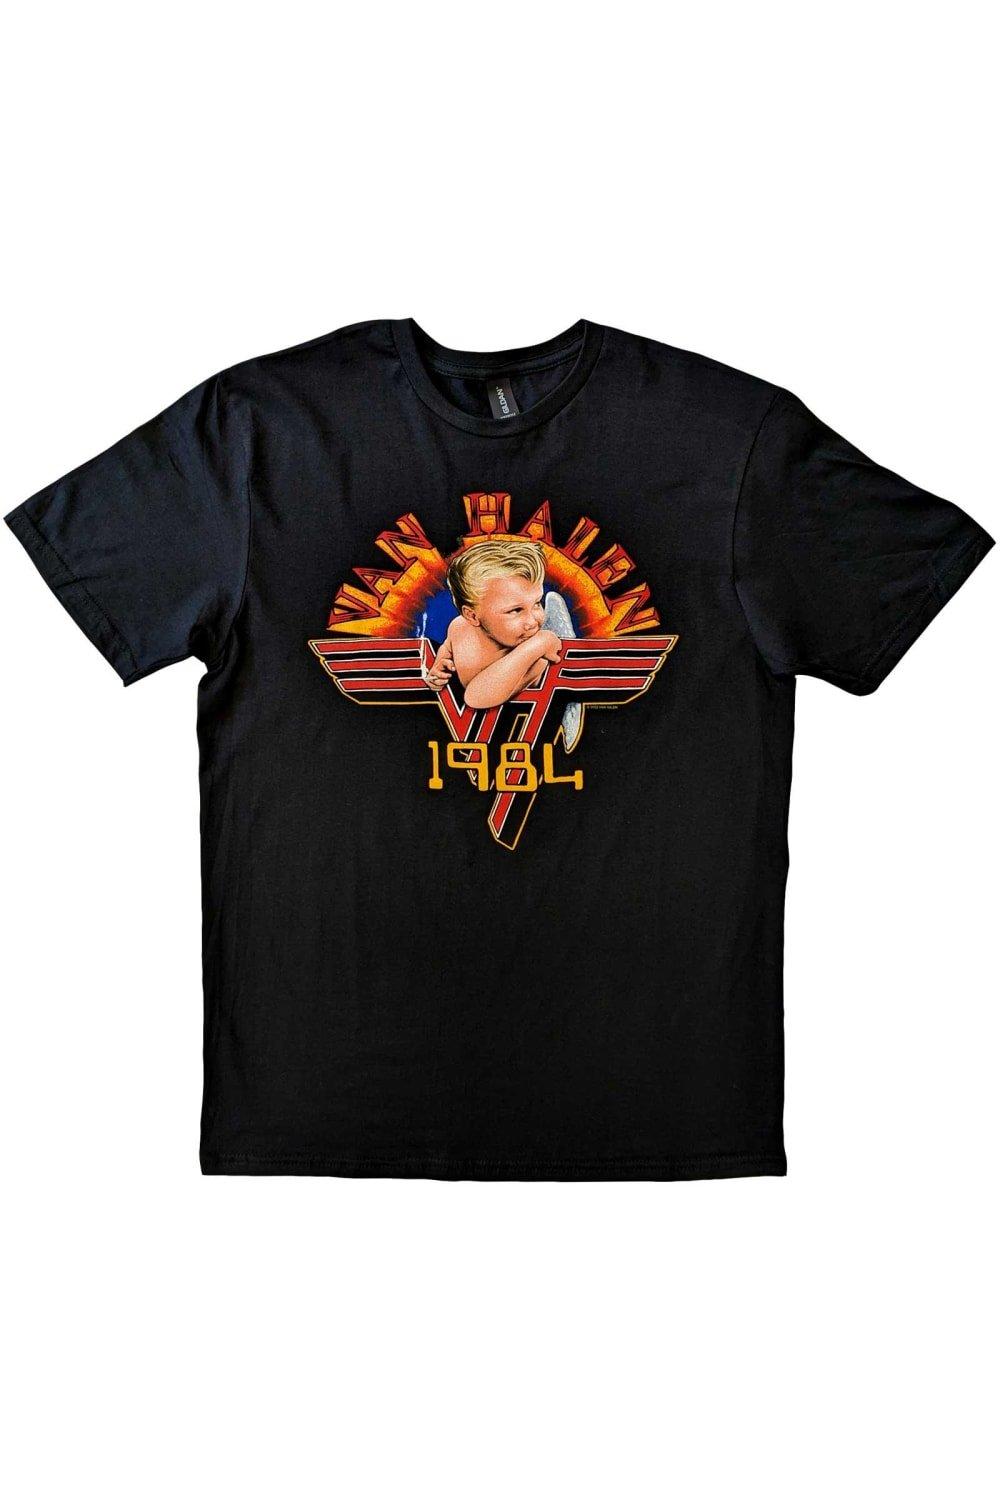 Хлопковая футболка Cherub 1984 года Van Halen, черный виниловая пластинка van halen 1984 lp